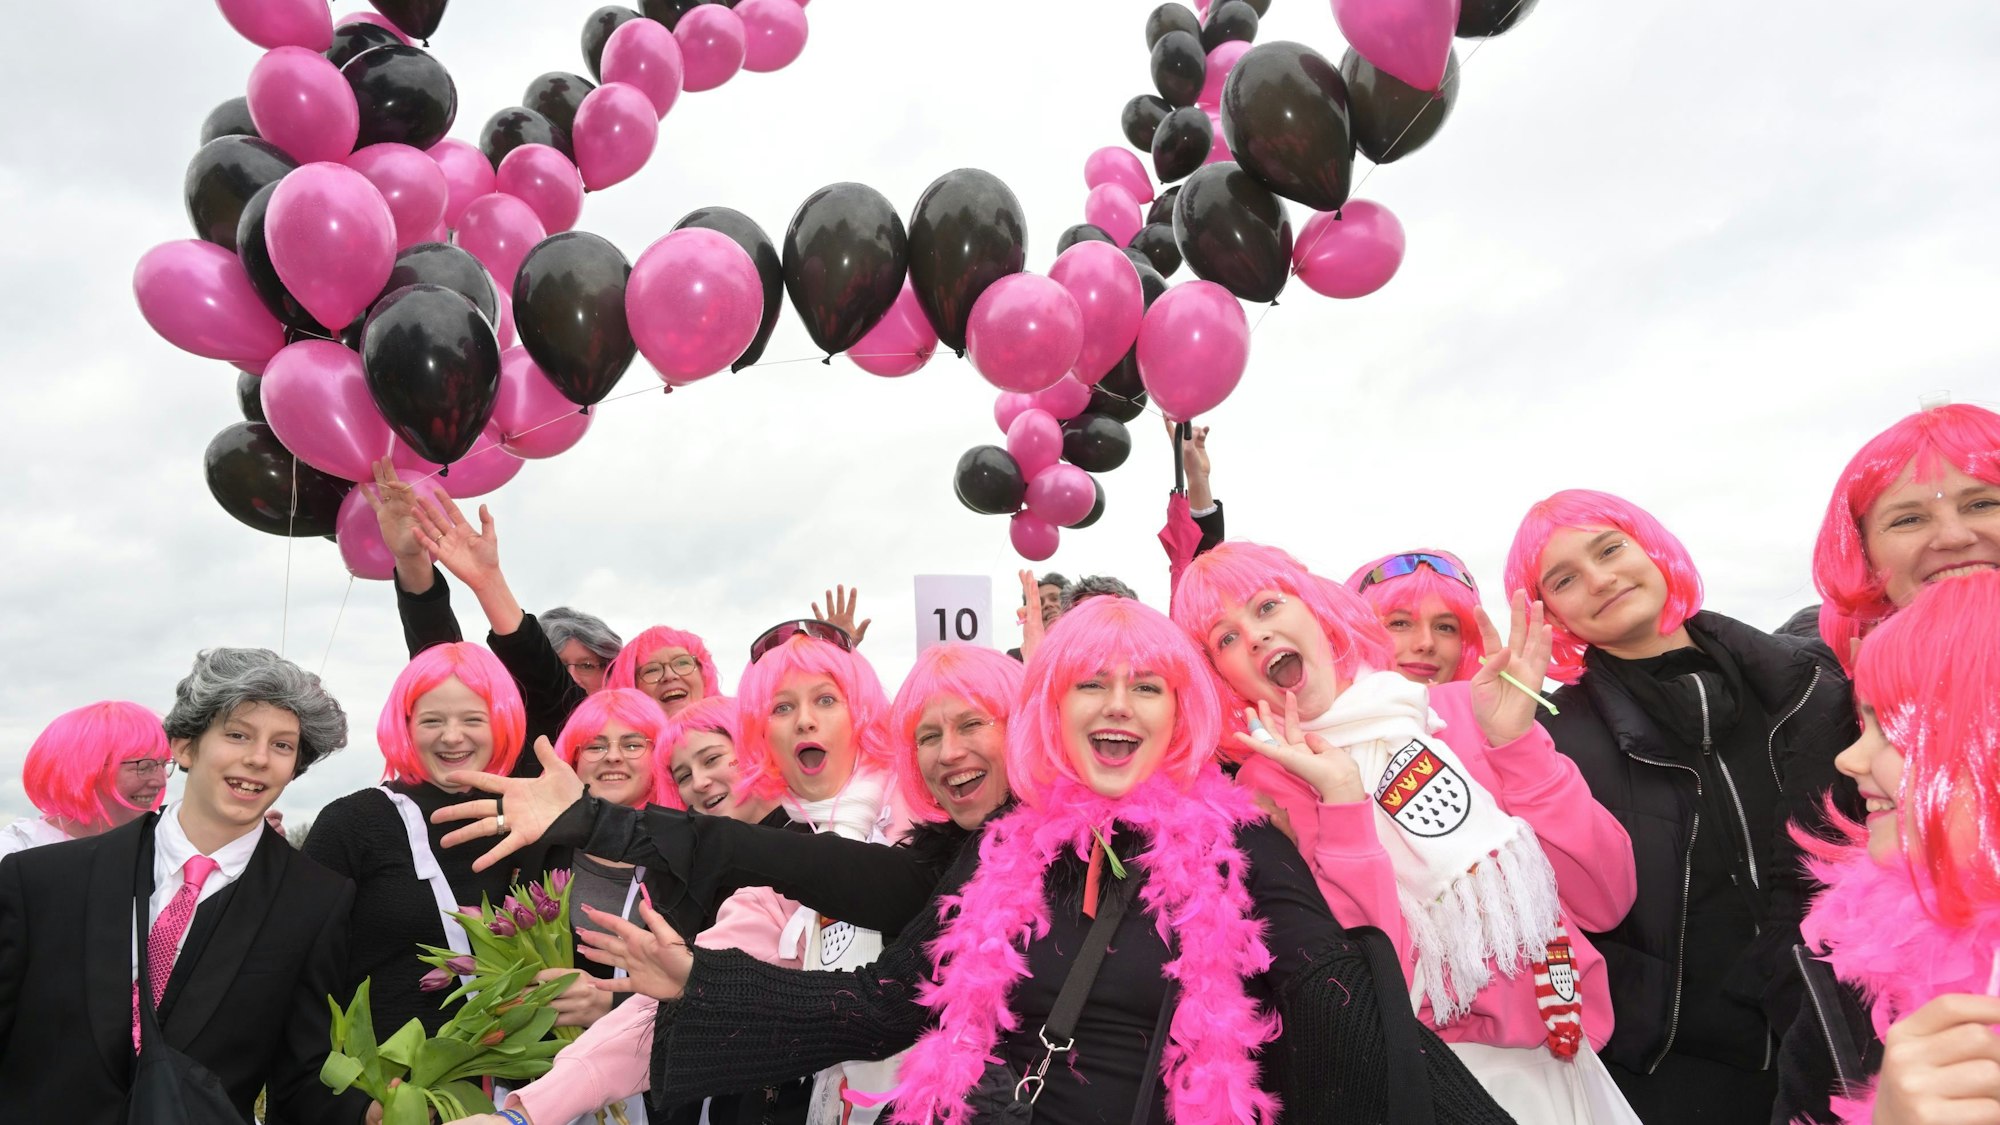 Kostümierte Jugendliche mit rosa Perücken und Luftballon